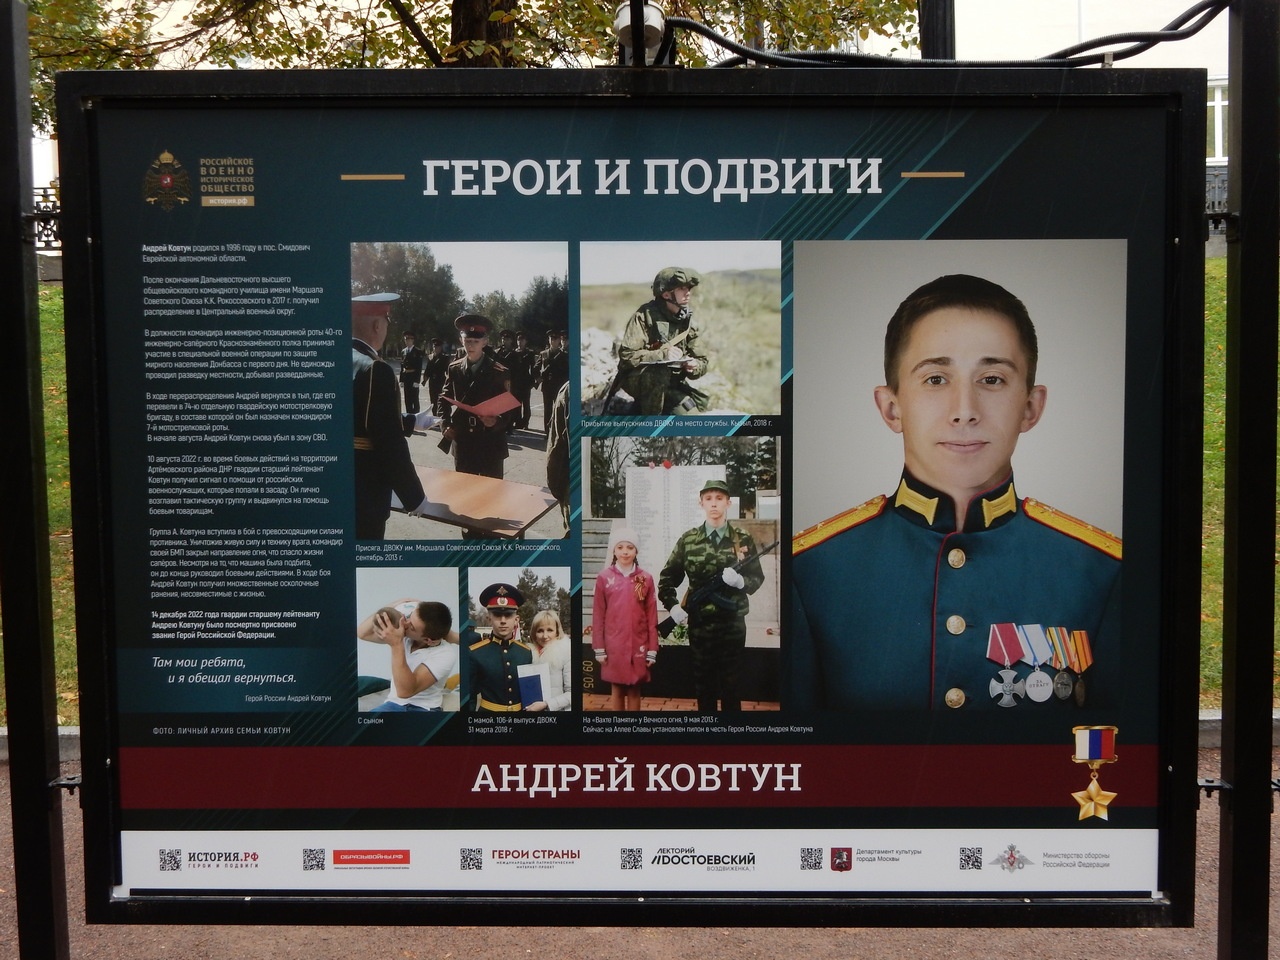 Персональный щит Героя РФ Андрея Ковтуна на фотовыставке «Герои и подвиги» на Гоголевском бульваре.